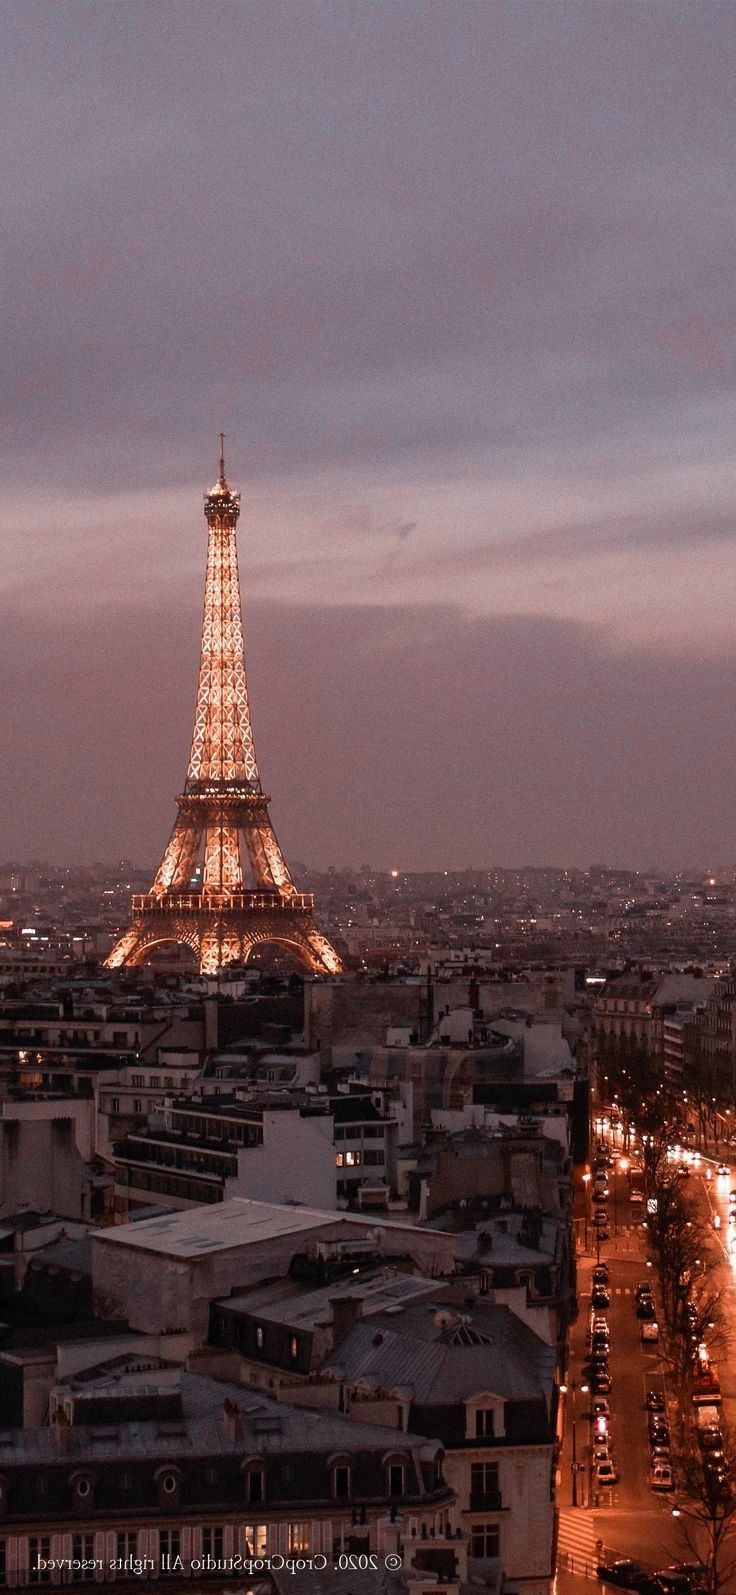 Eiffel Tower Paris Lockscreen. France wallpaper, Paris background, Paris picture